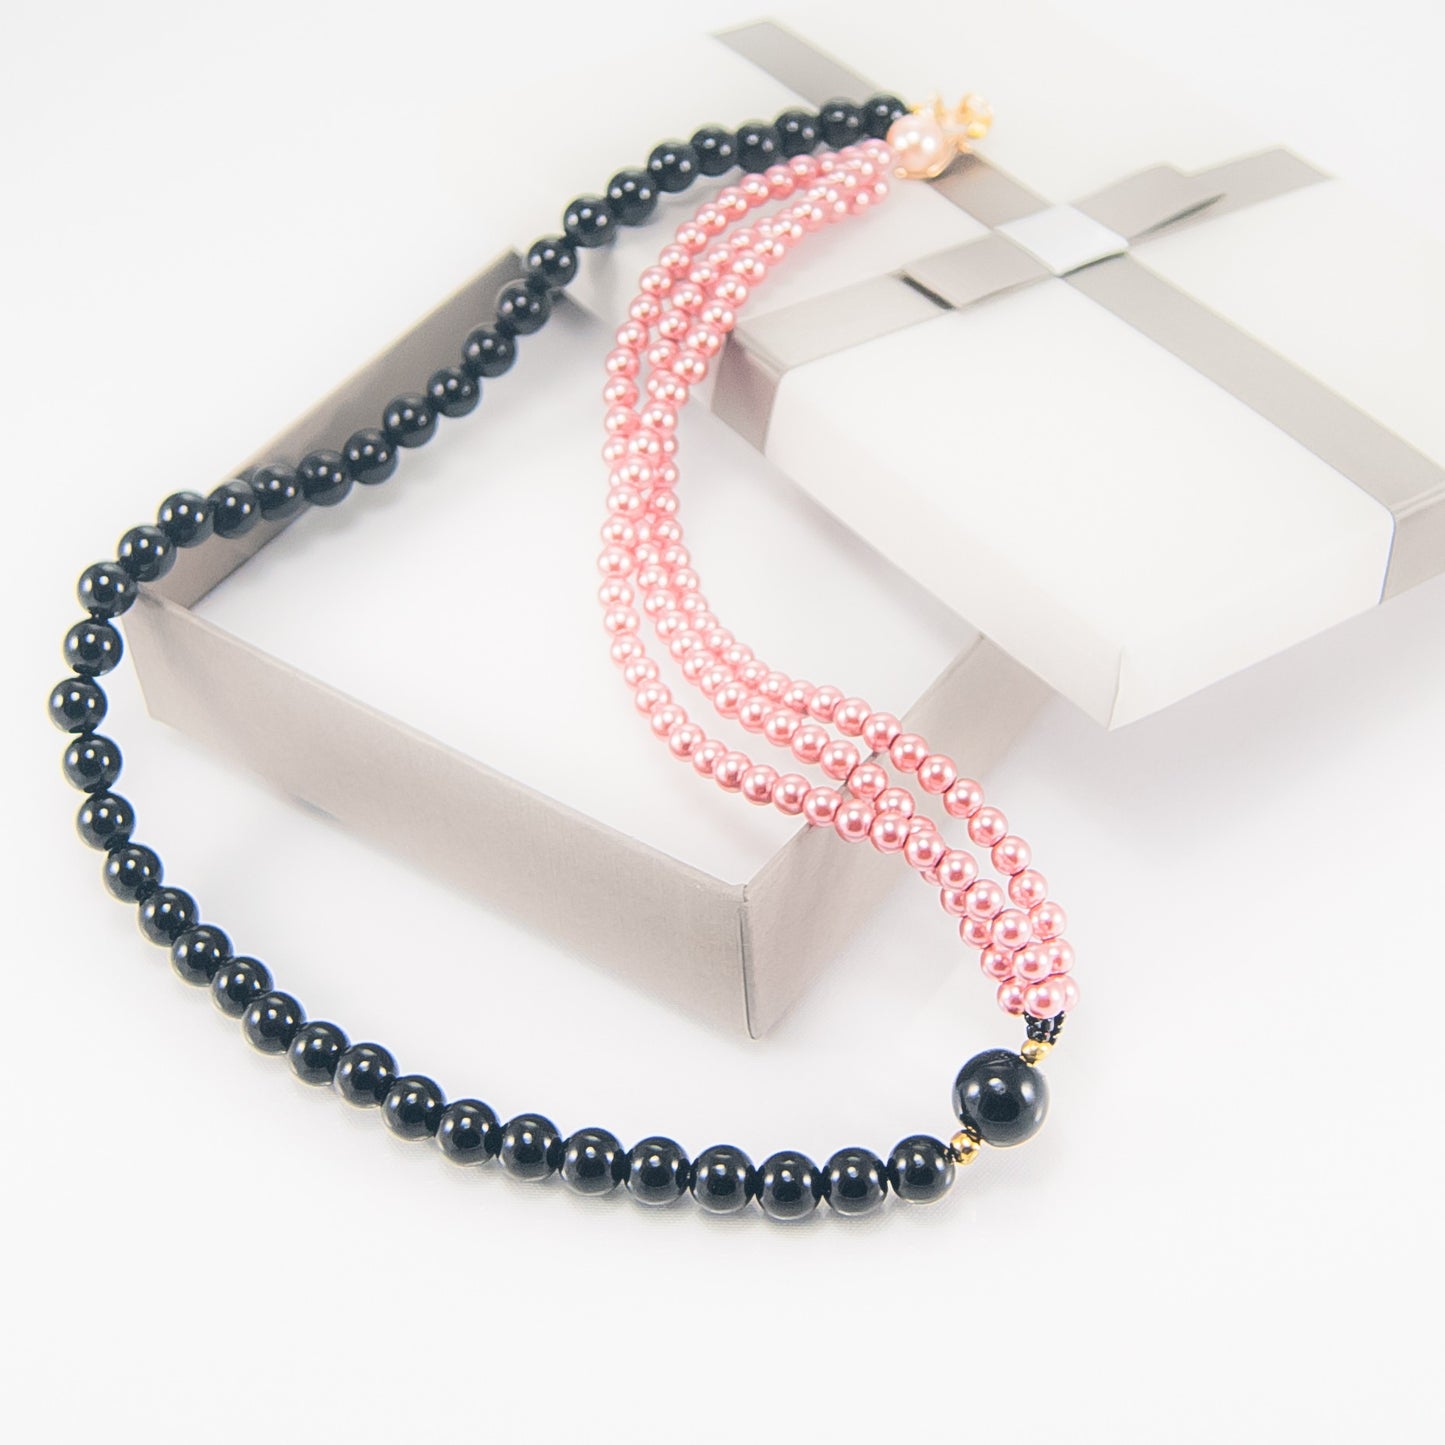 Collana LE PERLE .026, un filo perle onice legate a tre fili piccole perle rosa.